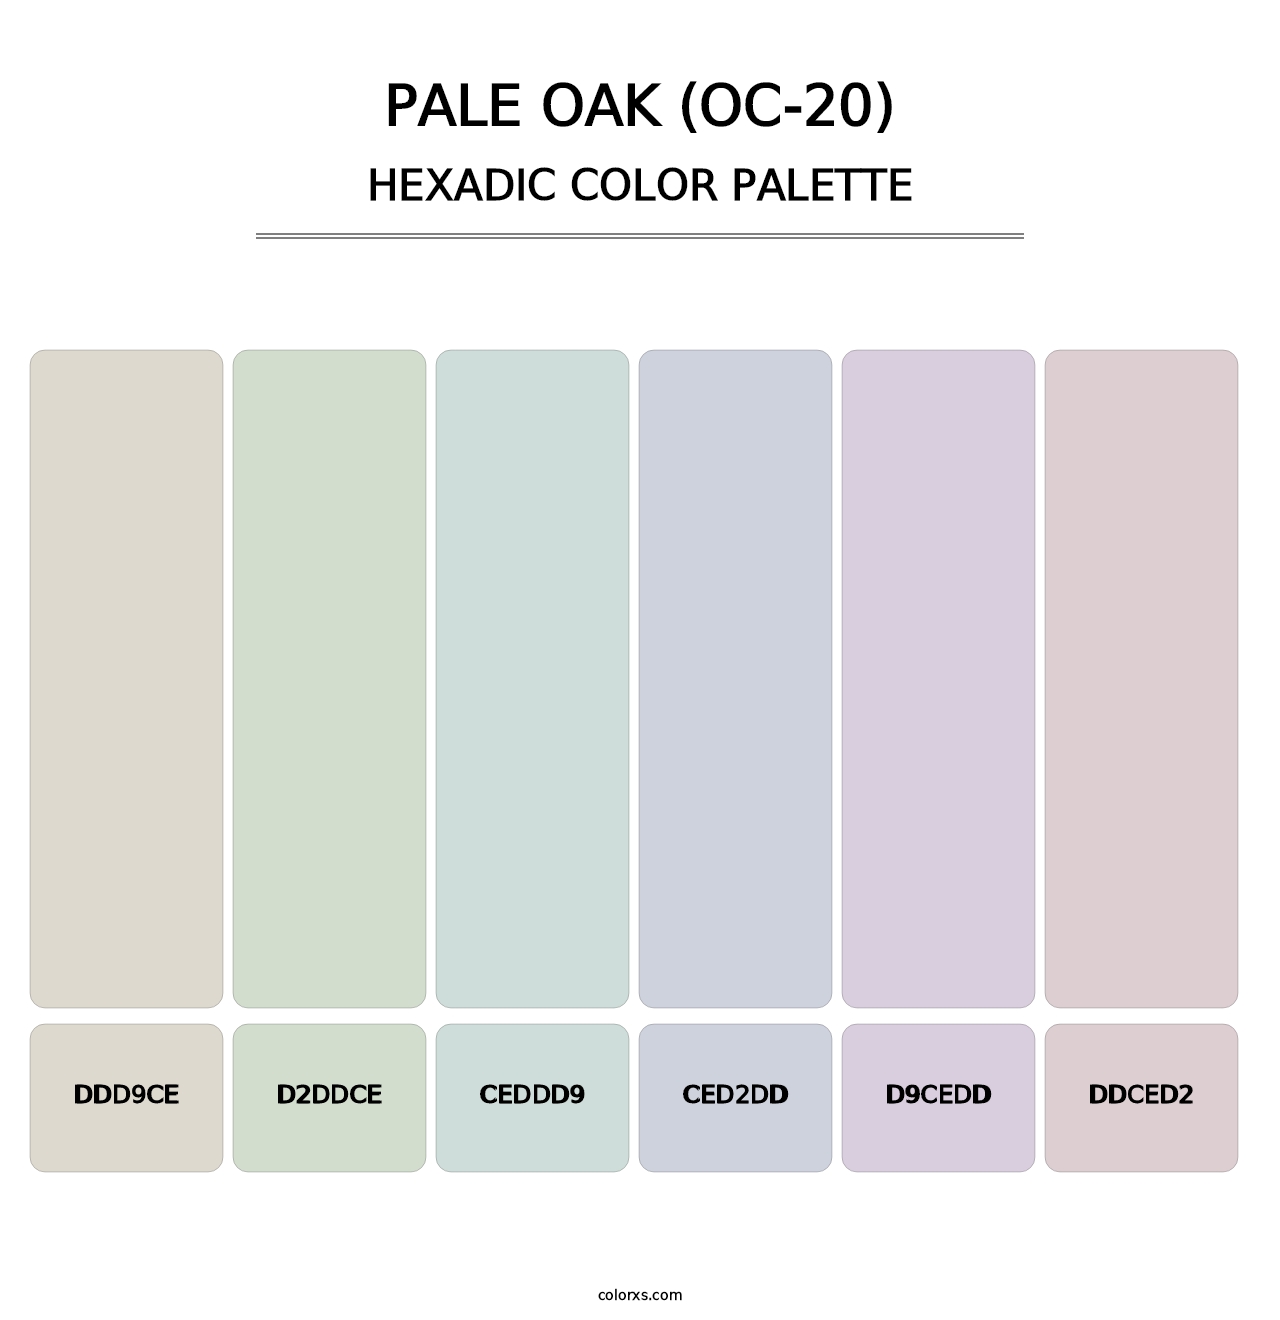 Pale Oak (OC-20) - Hexadic Color Palette